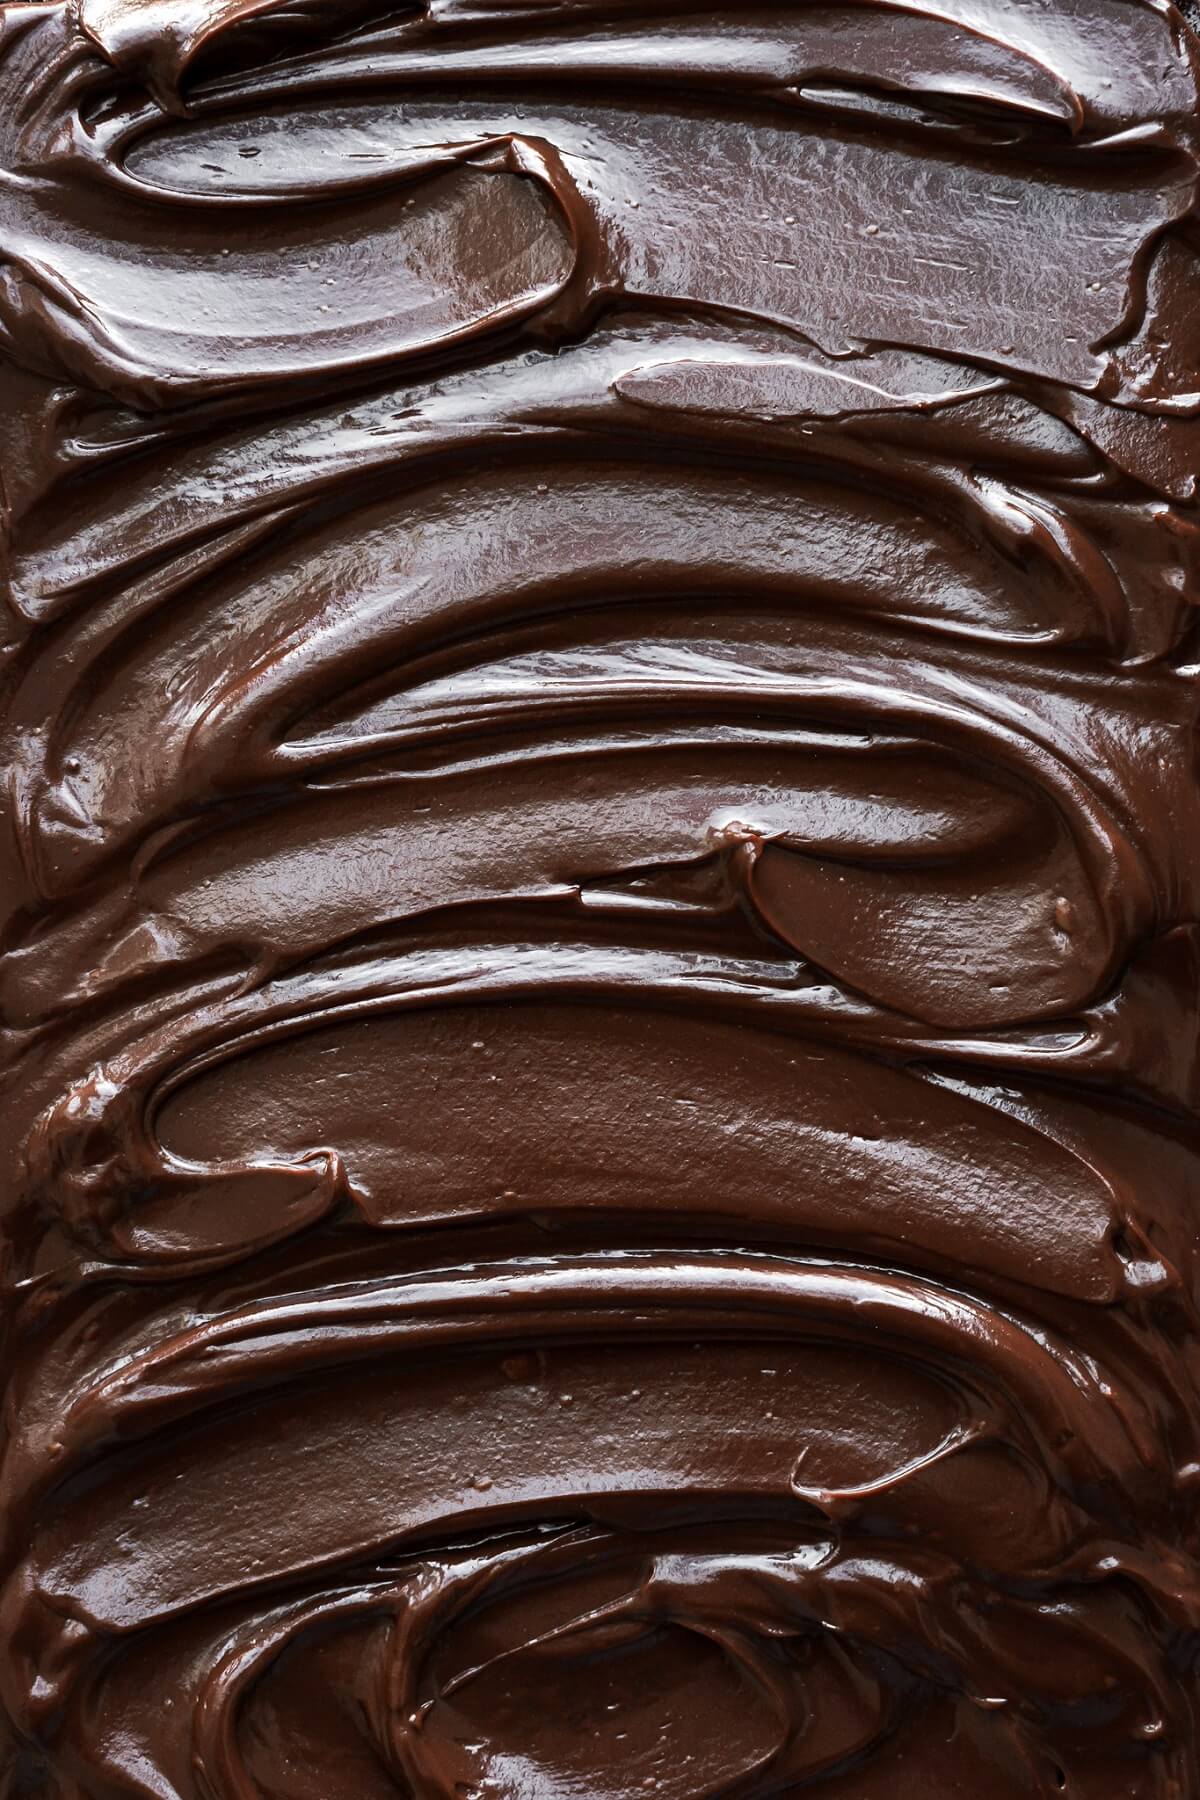 Swirls of chocolate ganache.